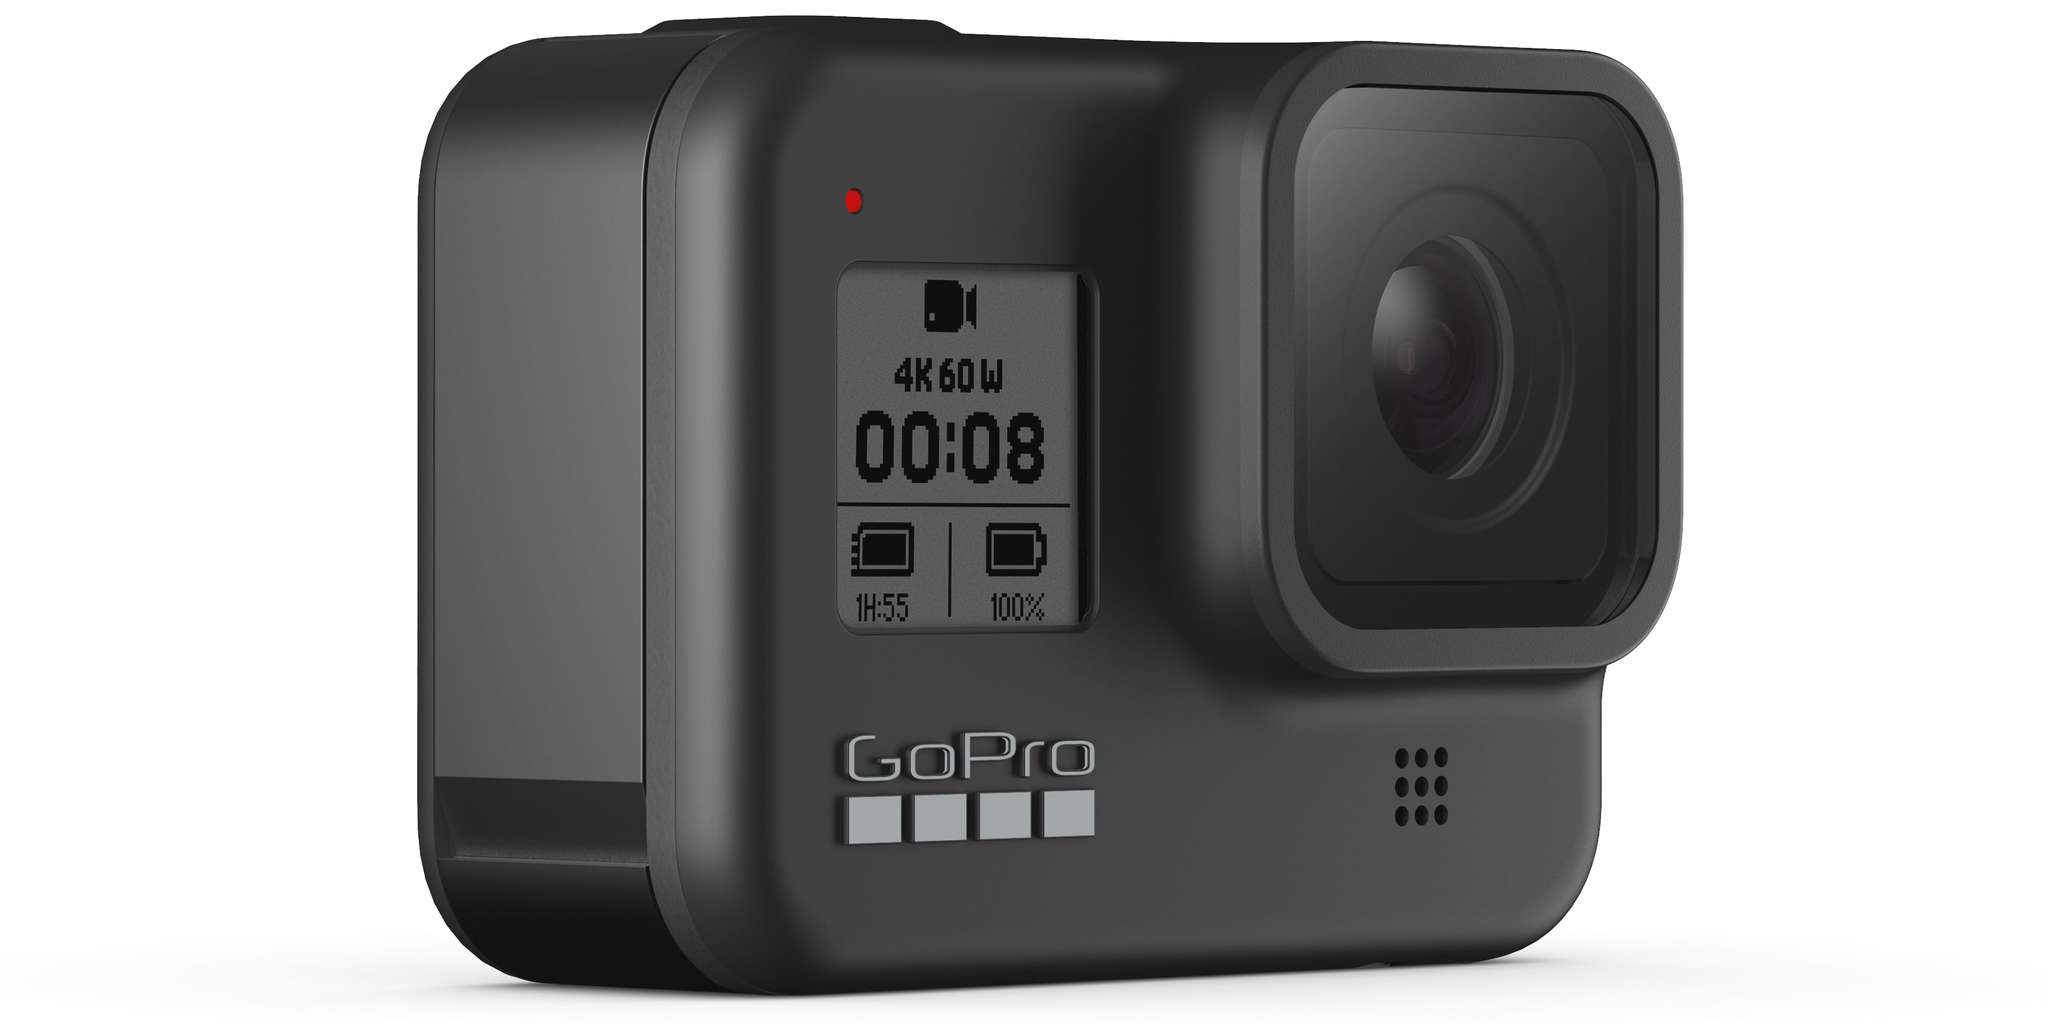 Есть ли альтернатива камерам gopro? в поисках достойных конкурентов. cтатьи, тесты, обзоры